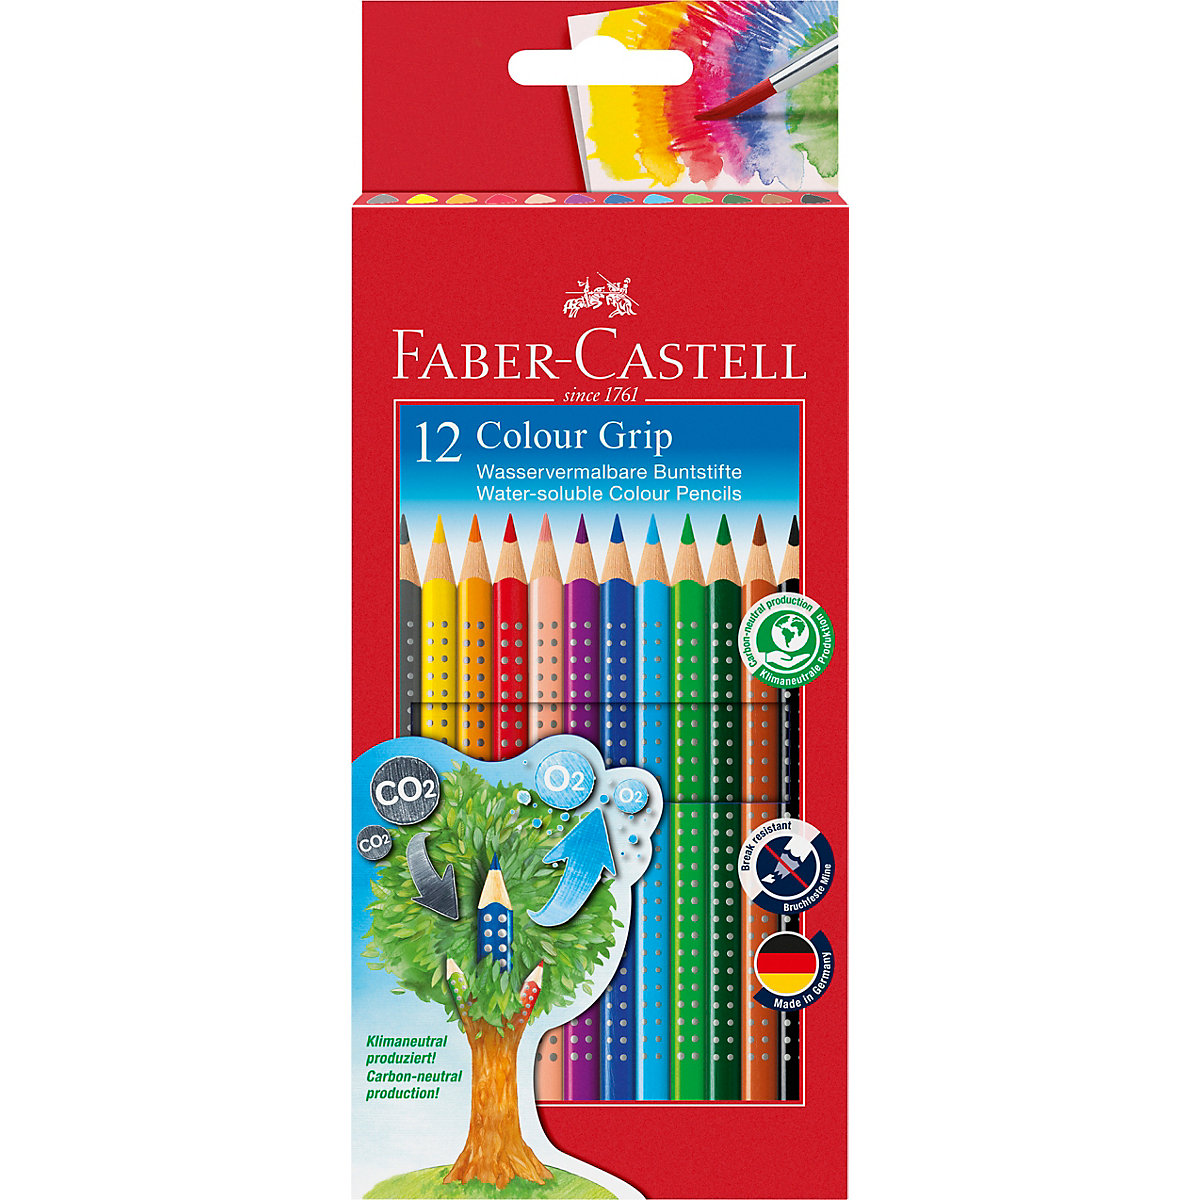 Faber-Castell Buntstifte COLOUR GRIP wasservermalbar 12 Farben